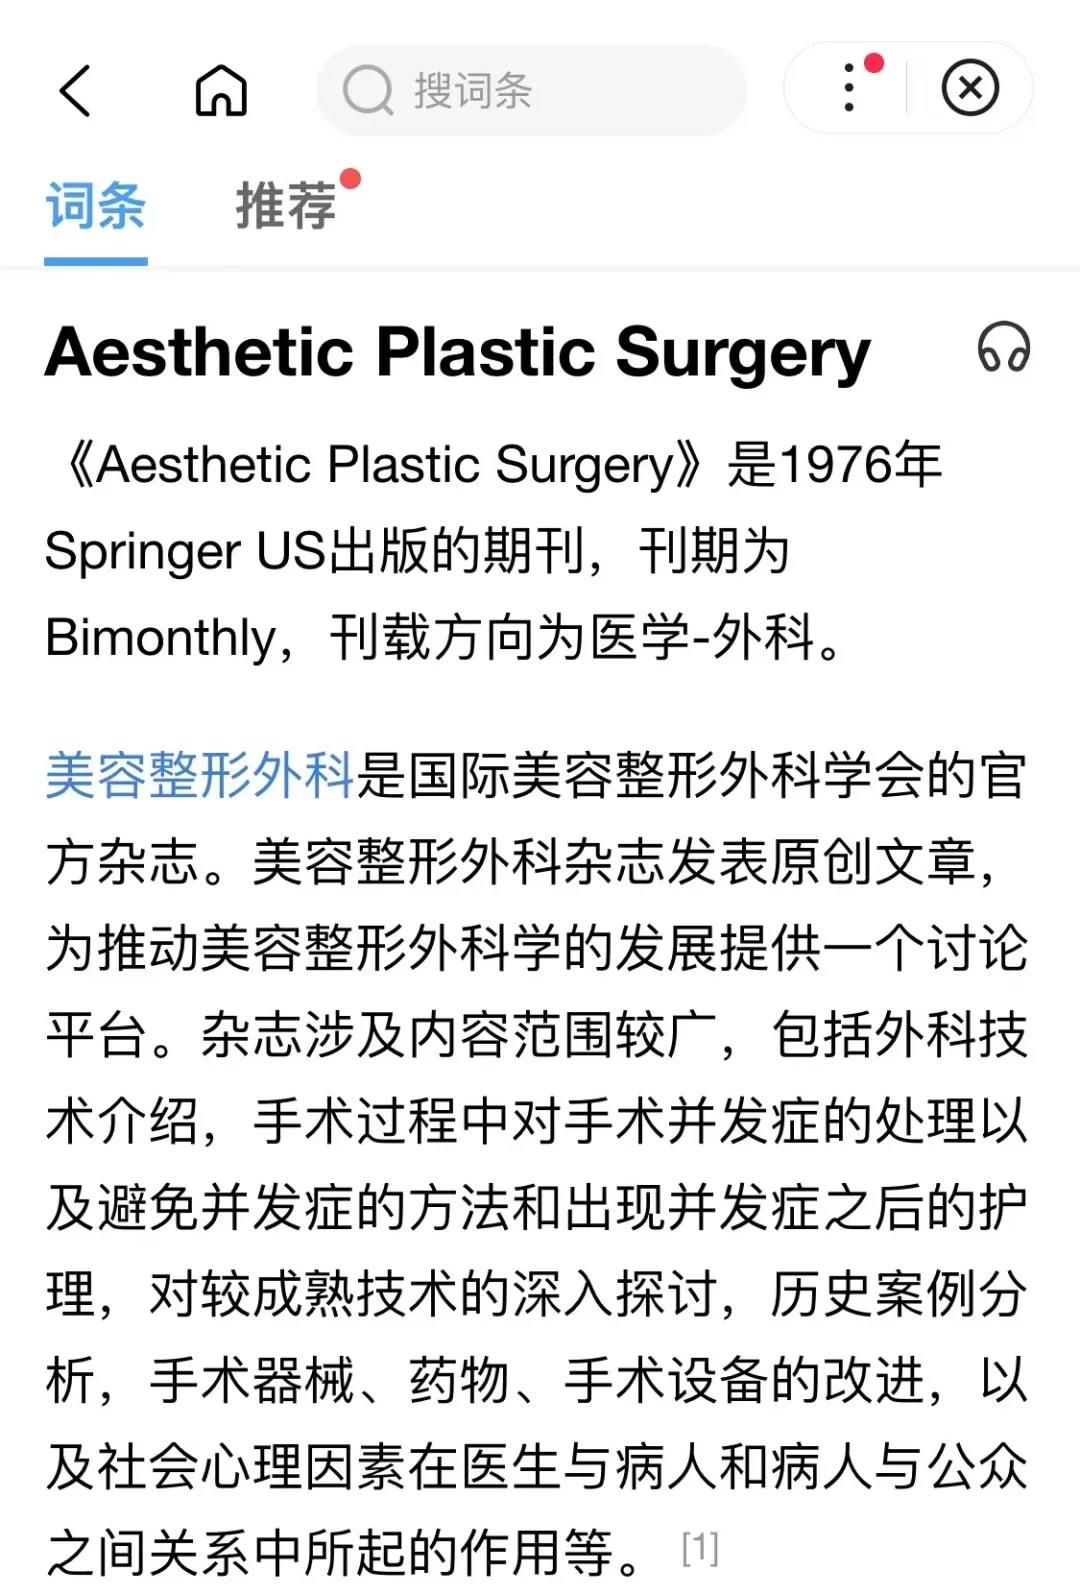 莎蔓莉莎旗下，美吉拉眼整形特聘外科院长刘志刚“双眼皮成形术”论文上刊《美容整形外科》杂志